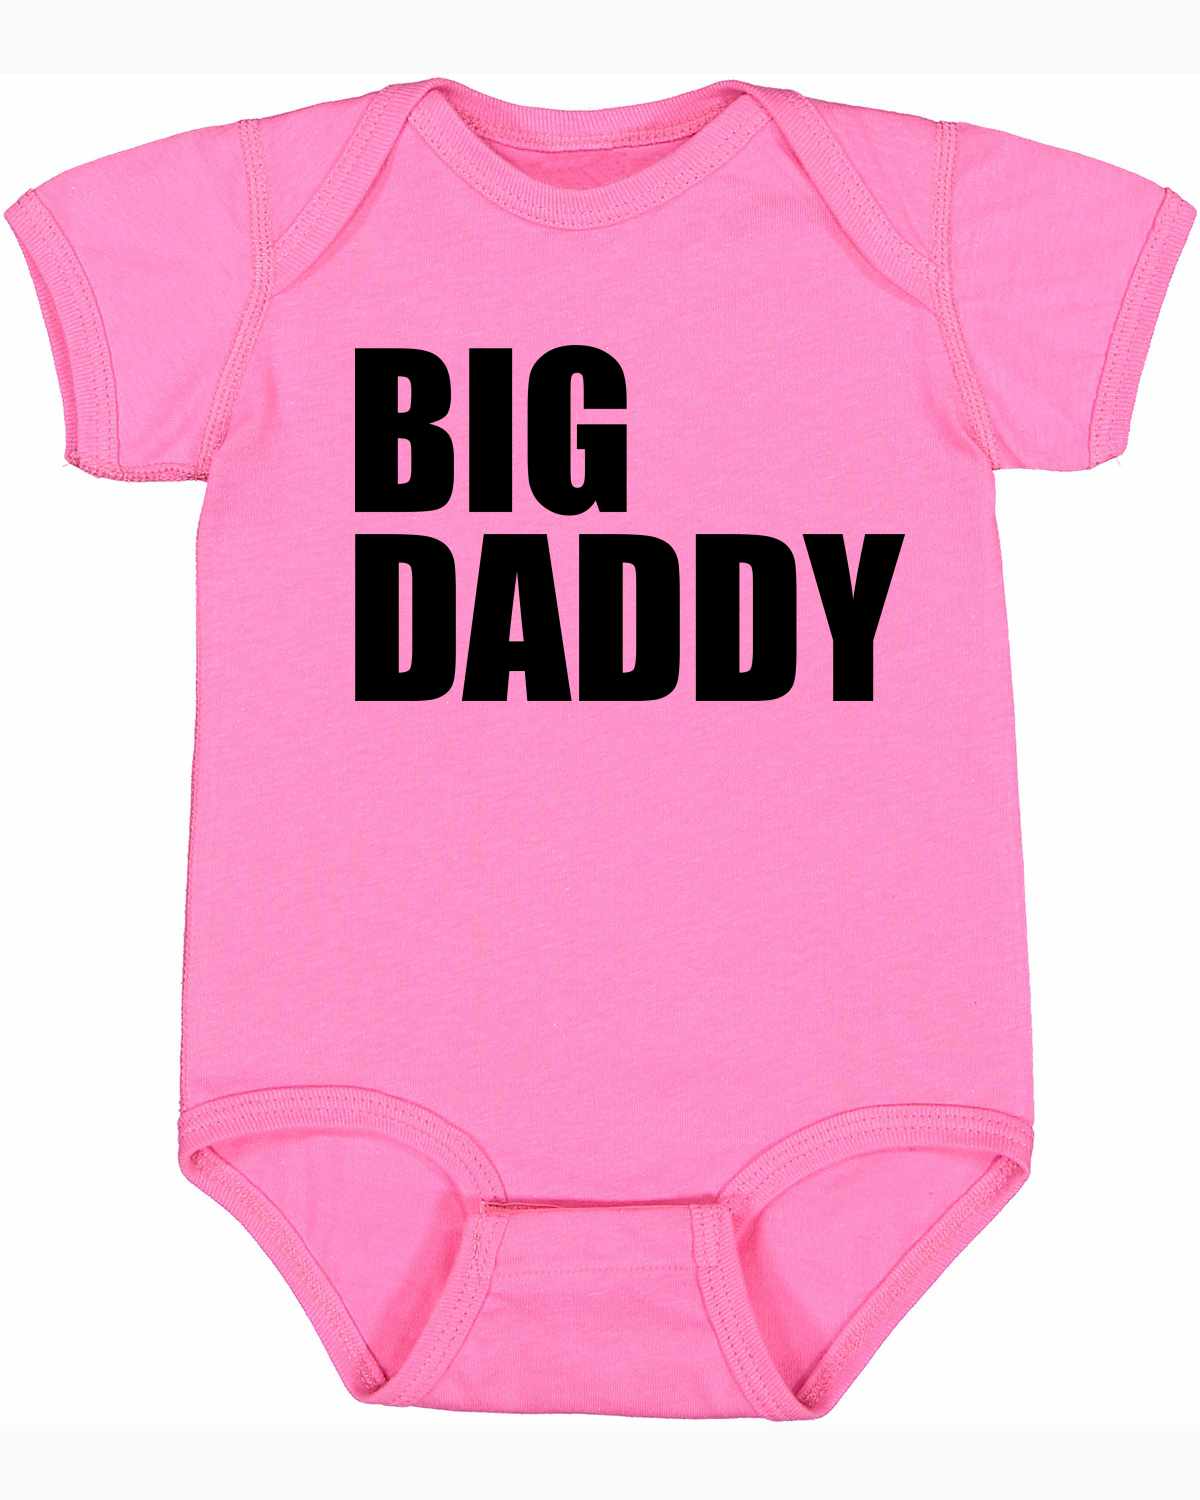 BIG DADDY Infant BodySuit (#706-10)